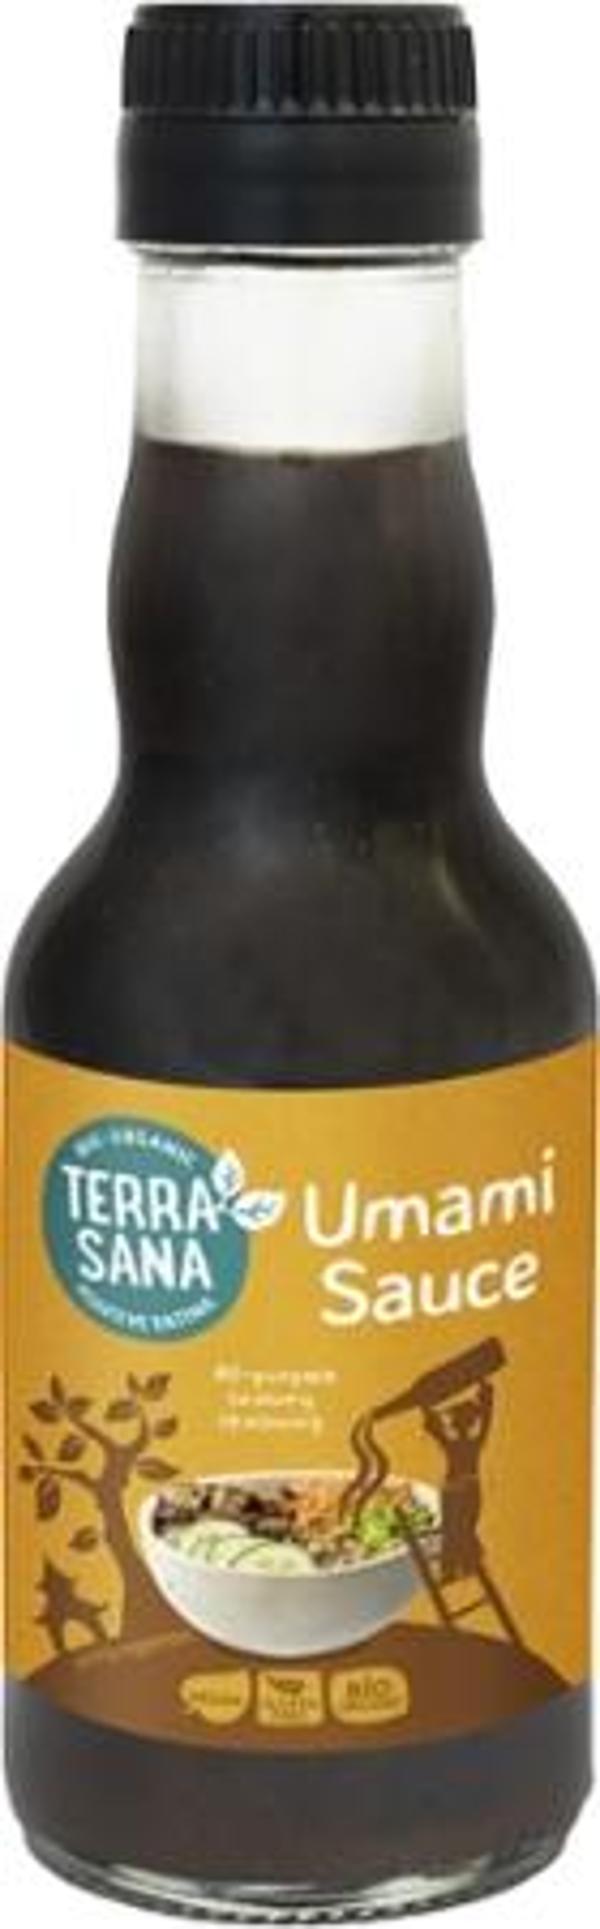 Produktfoto zu Umami Sauce - 145ml